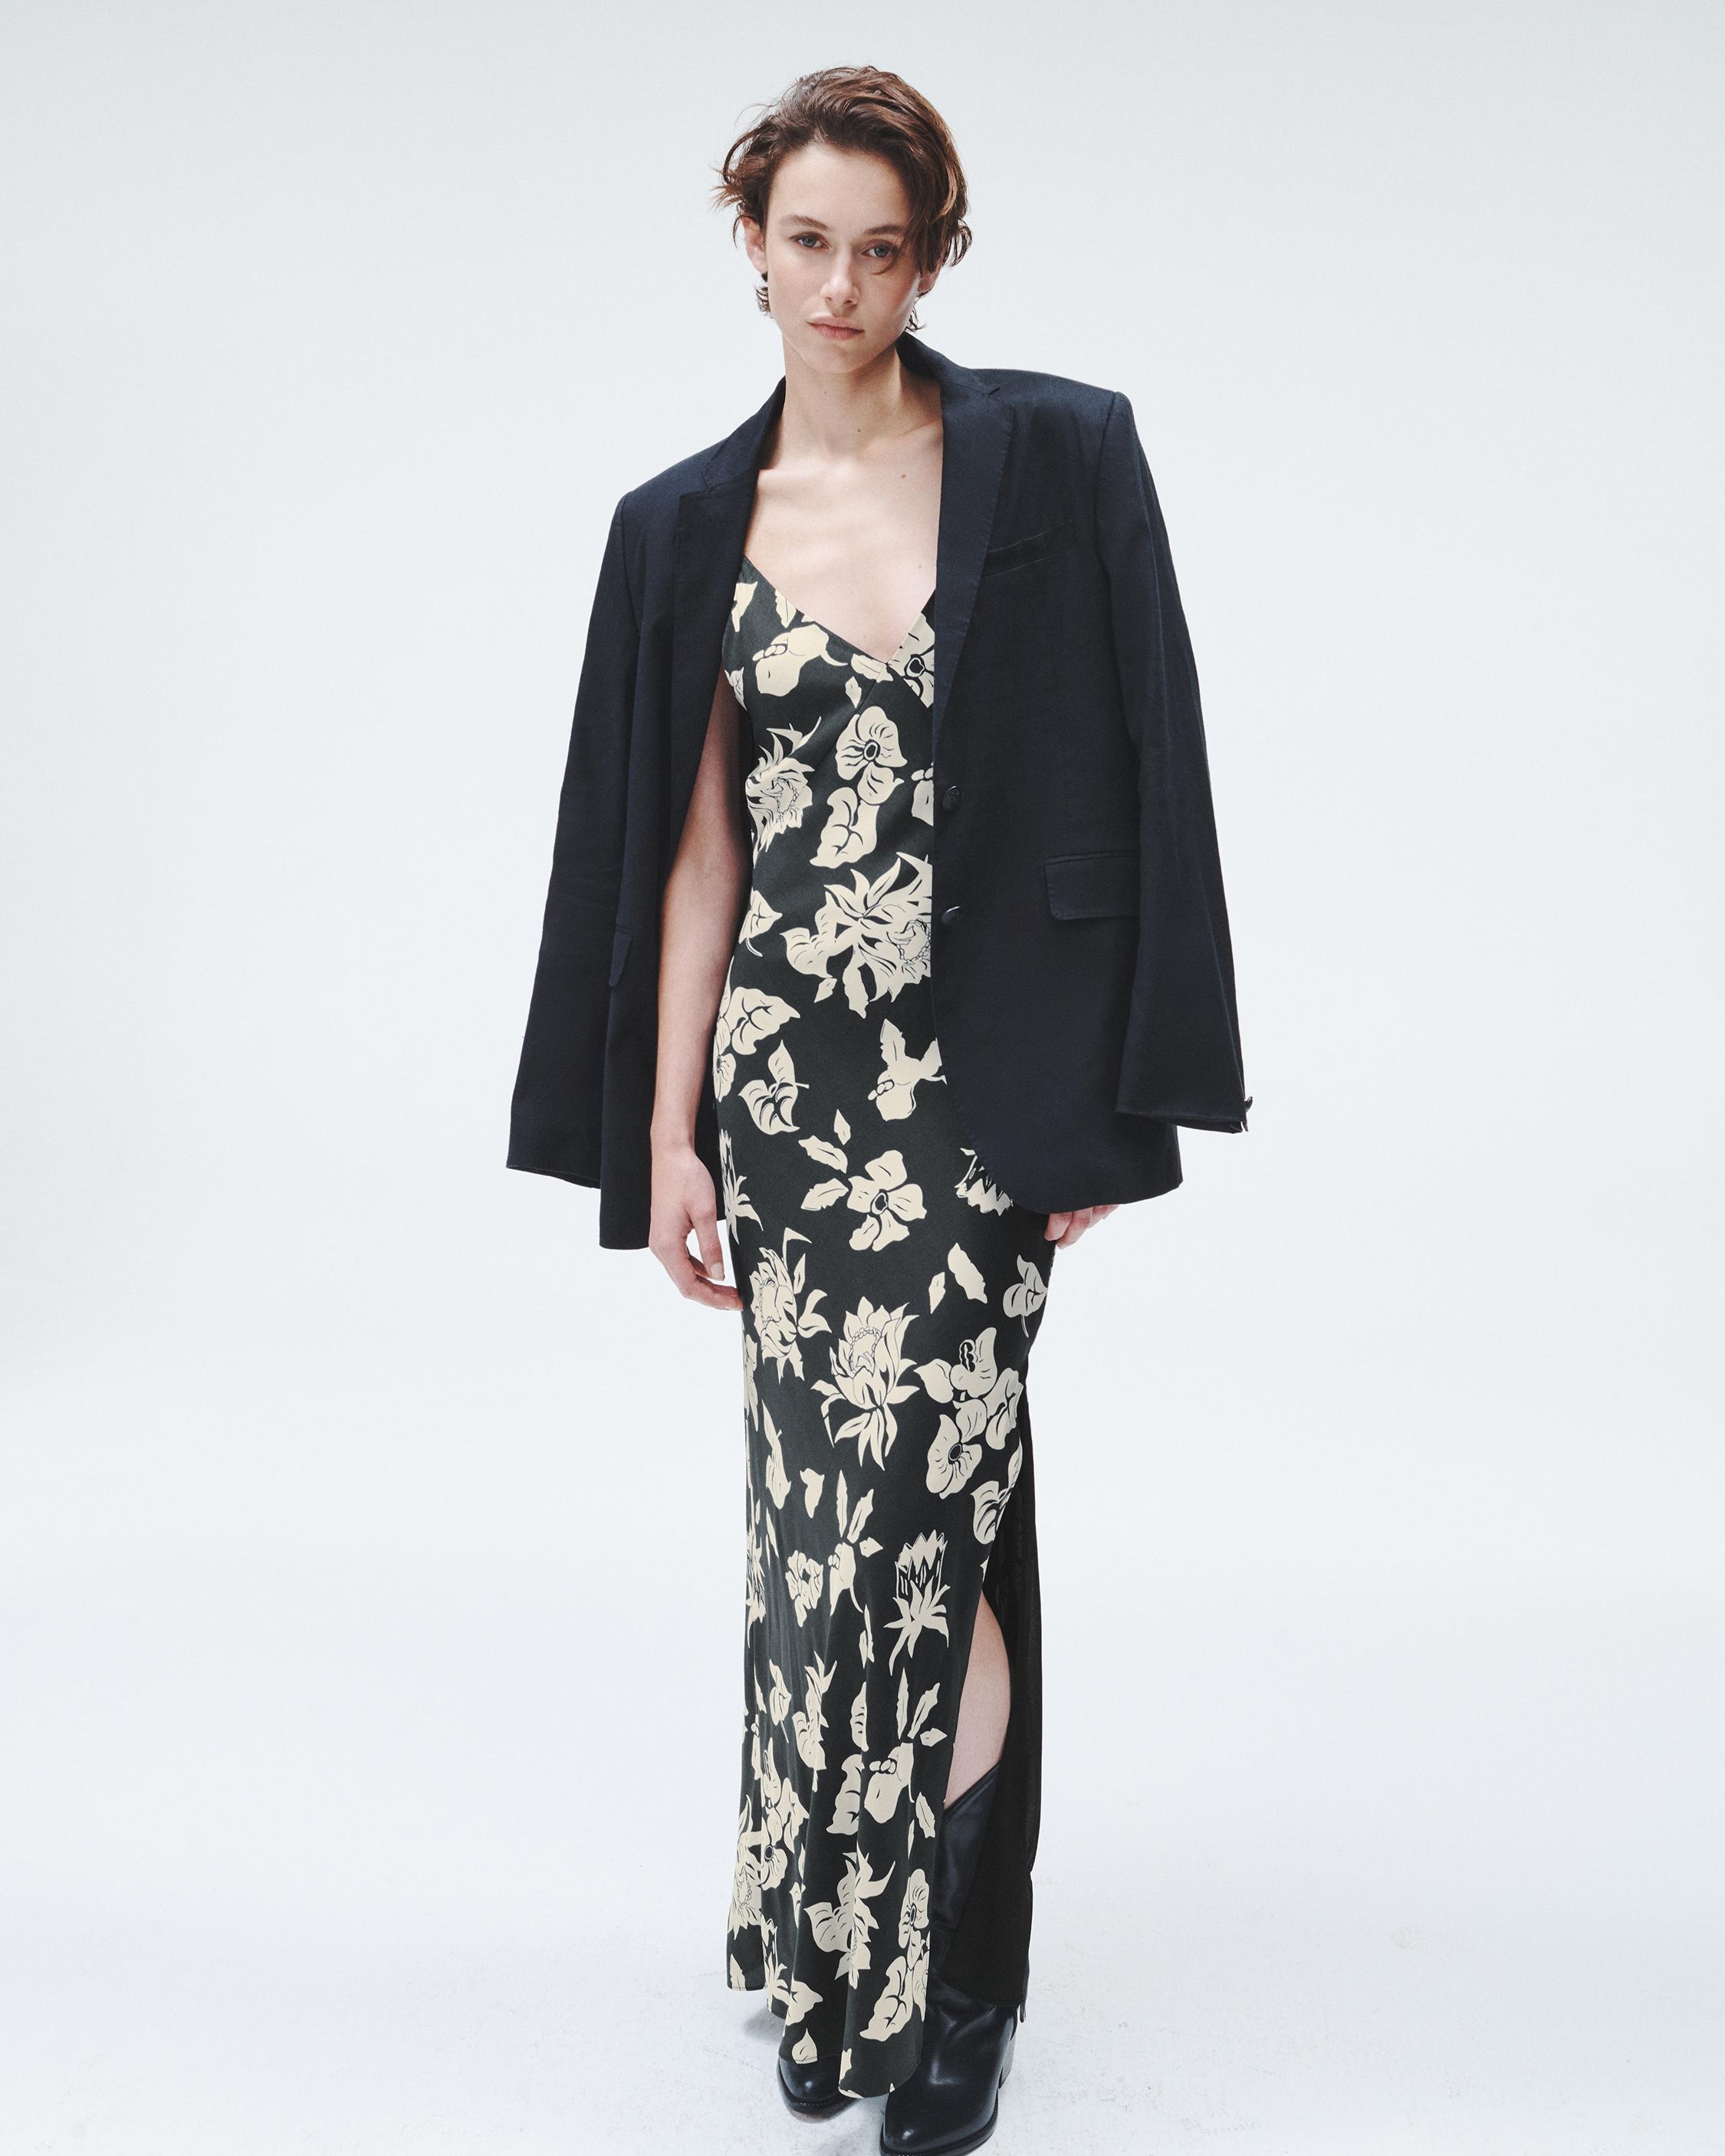 Larissa Printed Silk Dress
Maxi - 3